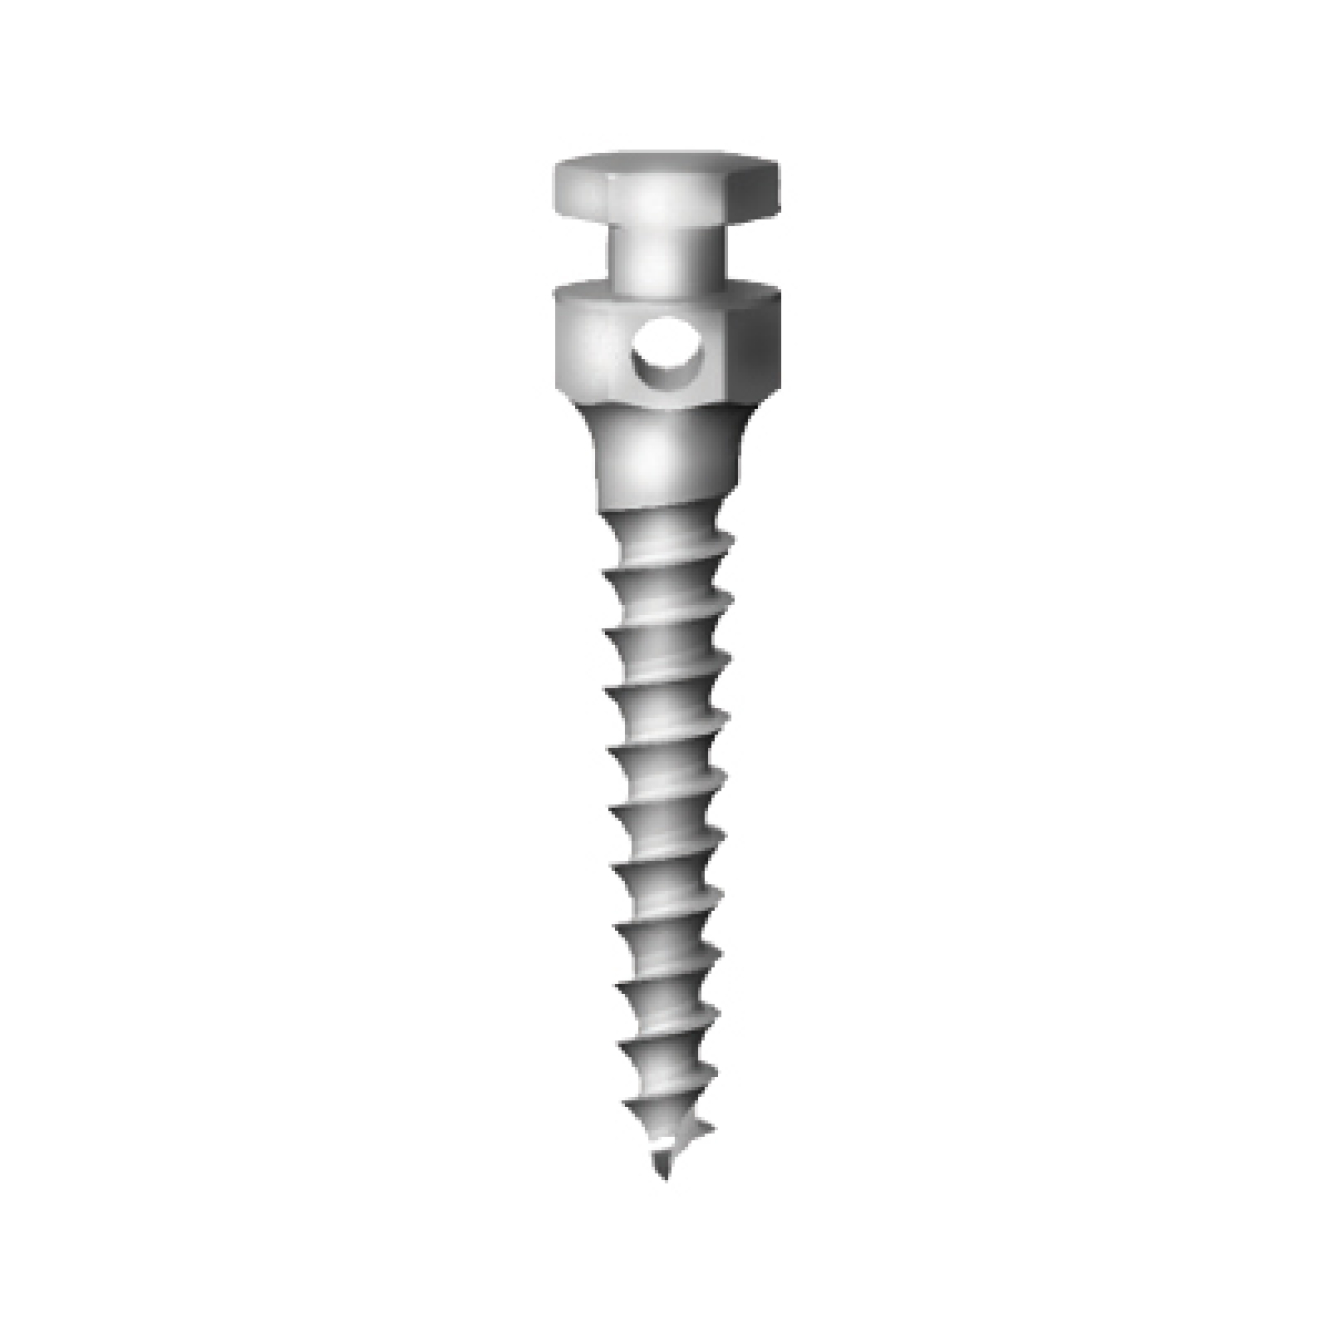 OS-L-20-006 Стоматологический ортодонтический винт для эластичной тяги и проволоки, диаметр 1.8 мм, длина 6 мм, Mr.Curette Tech, Южная Корея